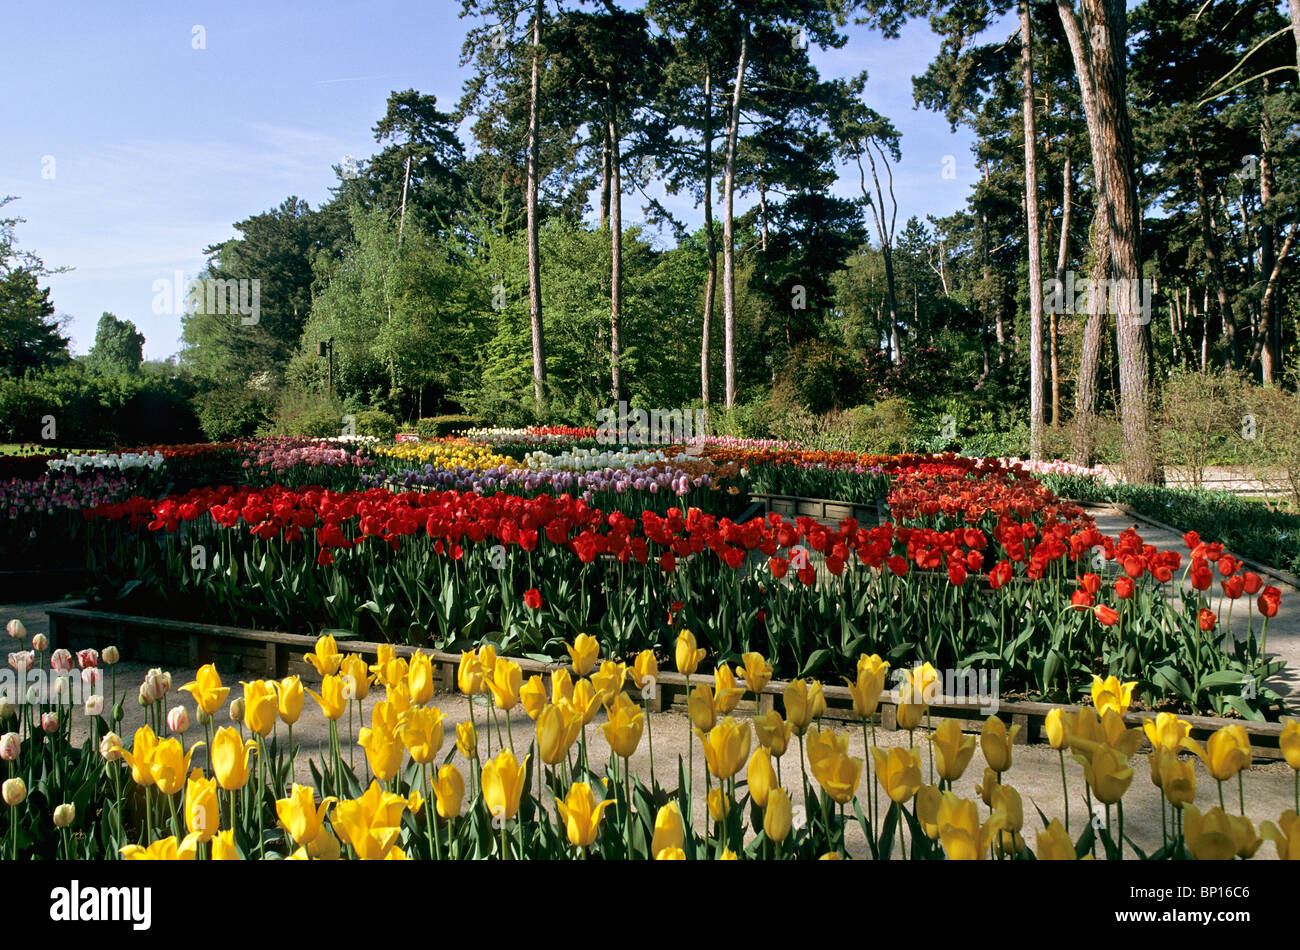 France, Paris, Bois de Vincennes, parc floral Stock Photo